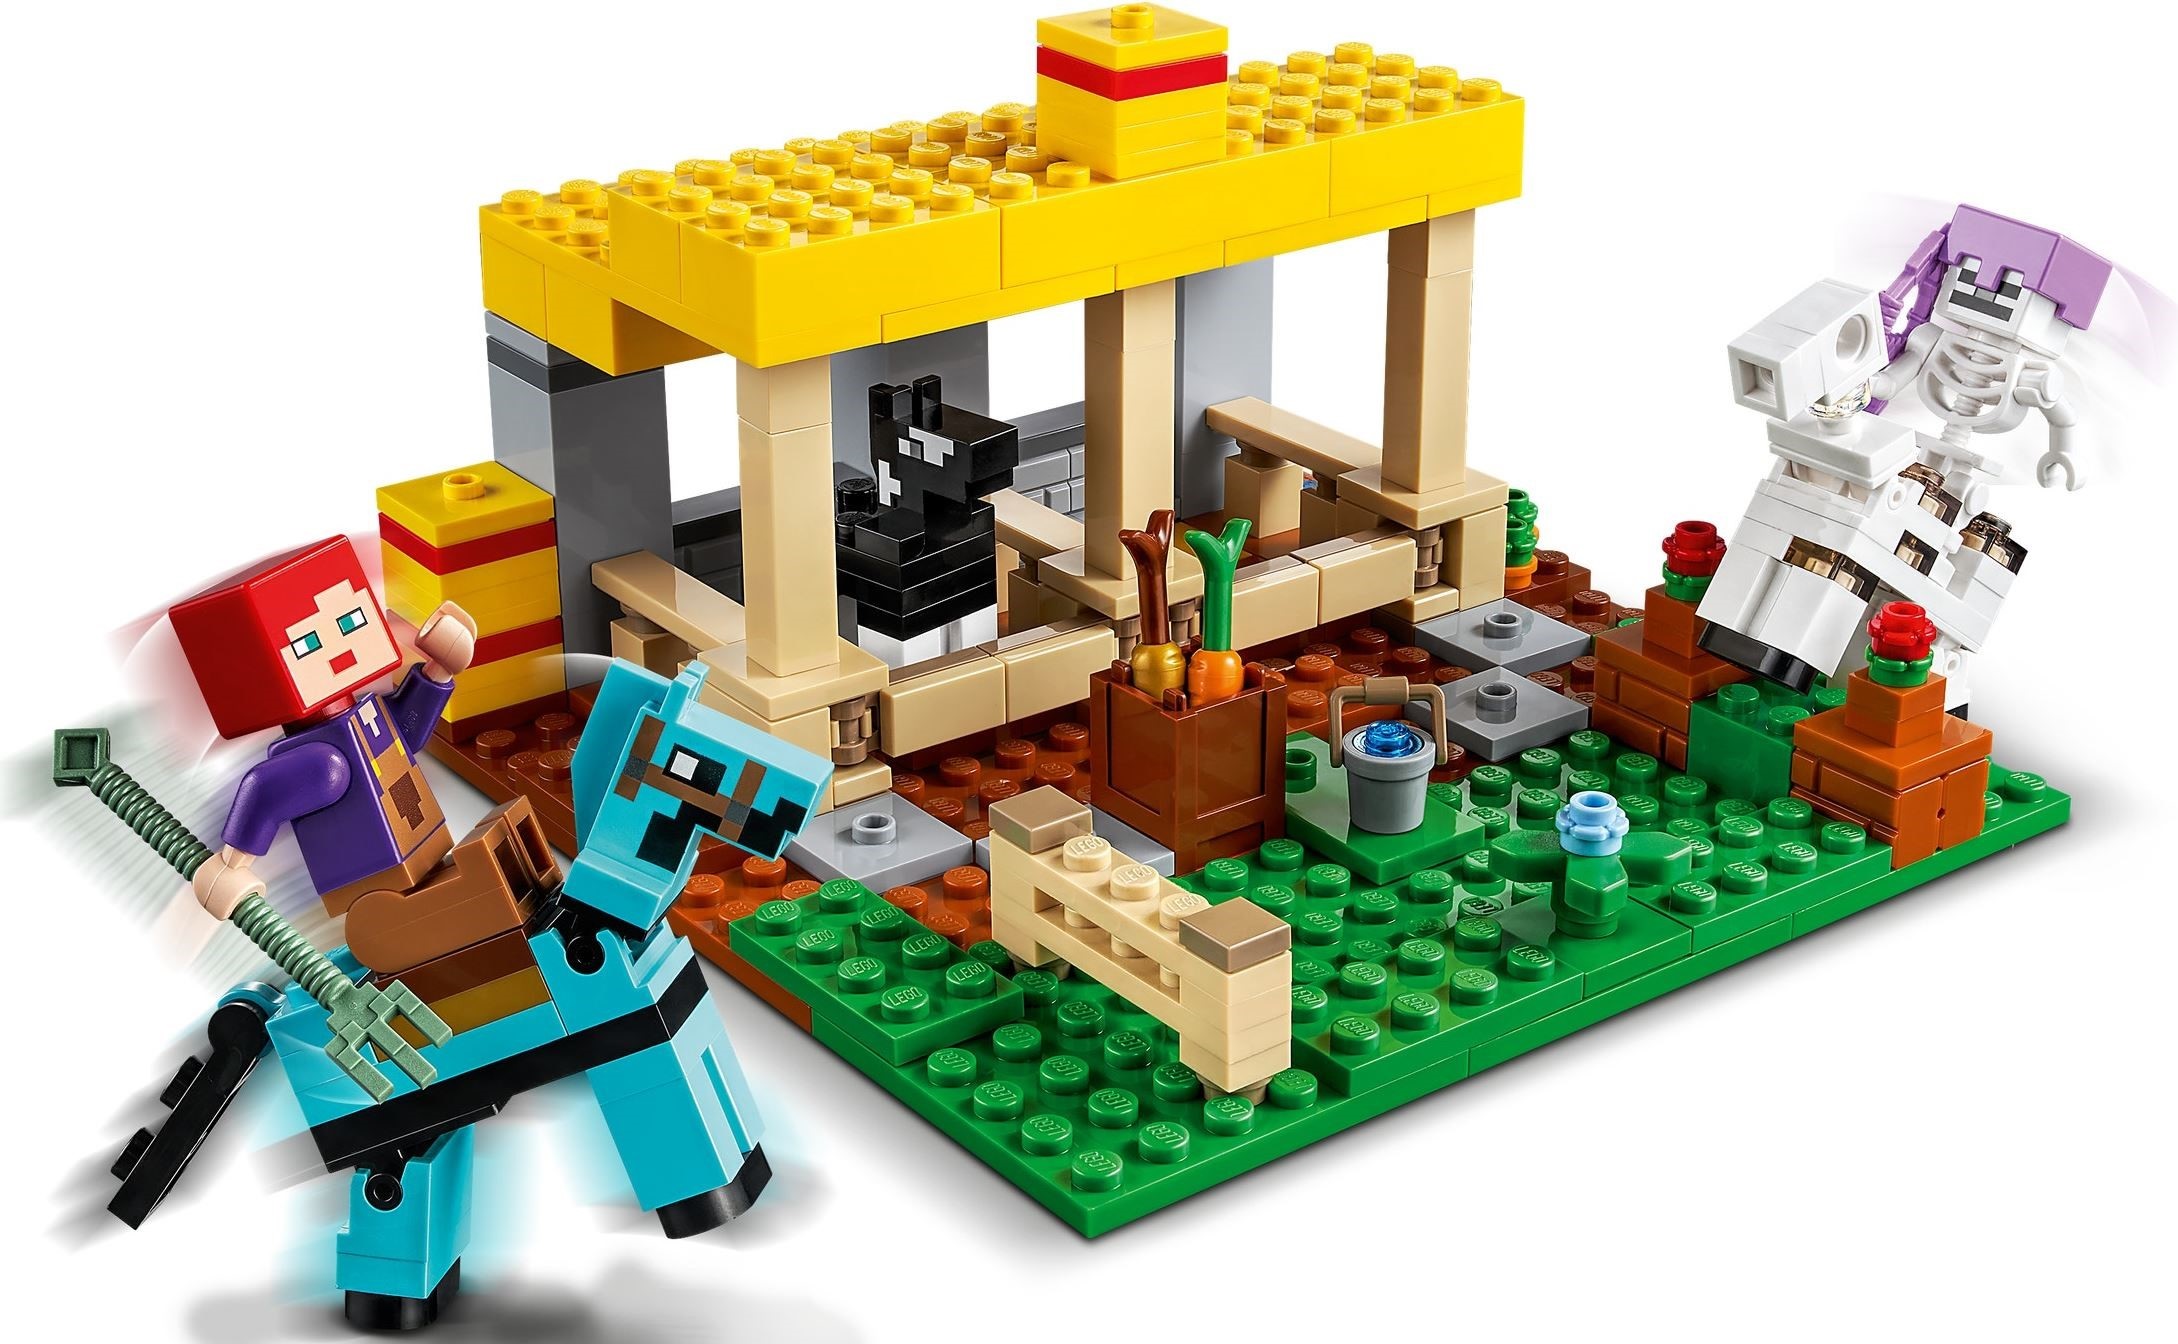 LEGO Minecraft™ 21171 Stajnia